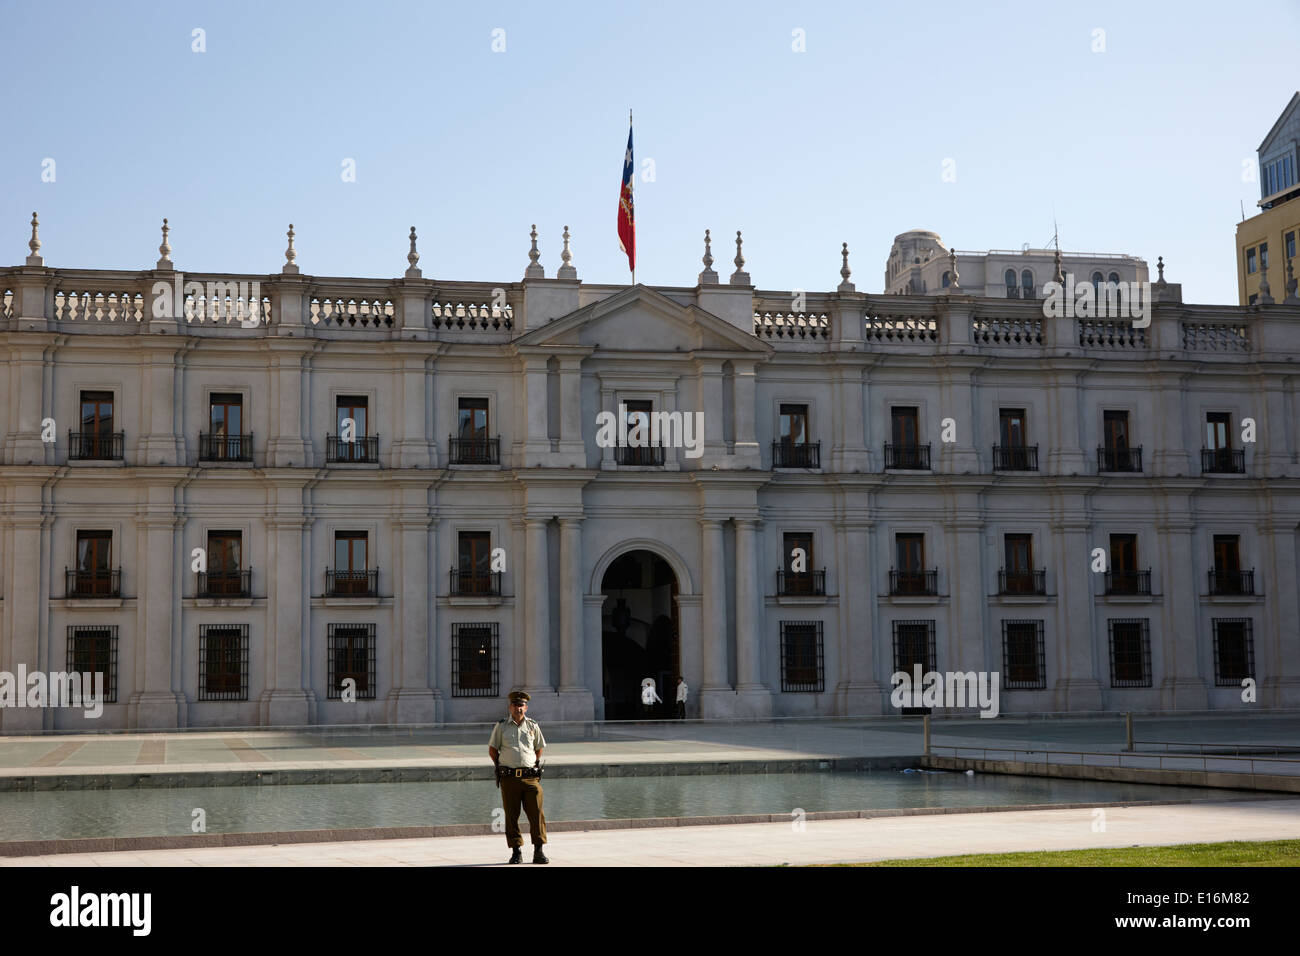 Les gardes de la police et de l'extérieur de Palacio de la moneda palace Santiago Chili Banque D'Images